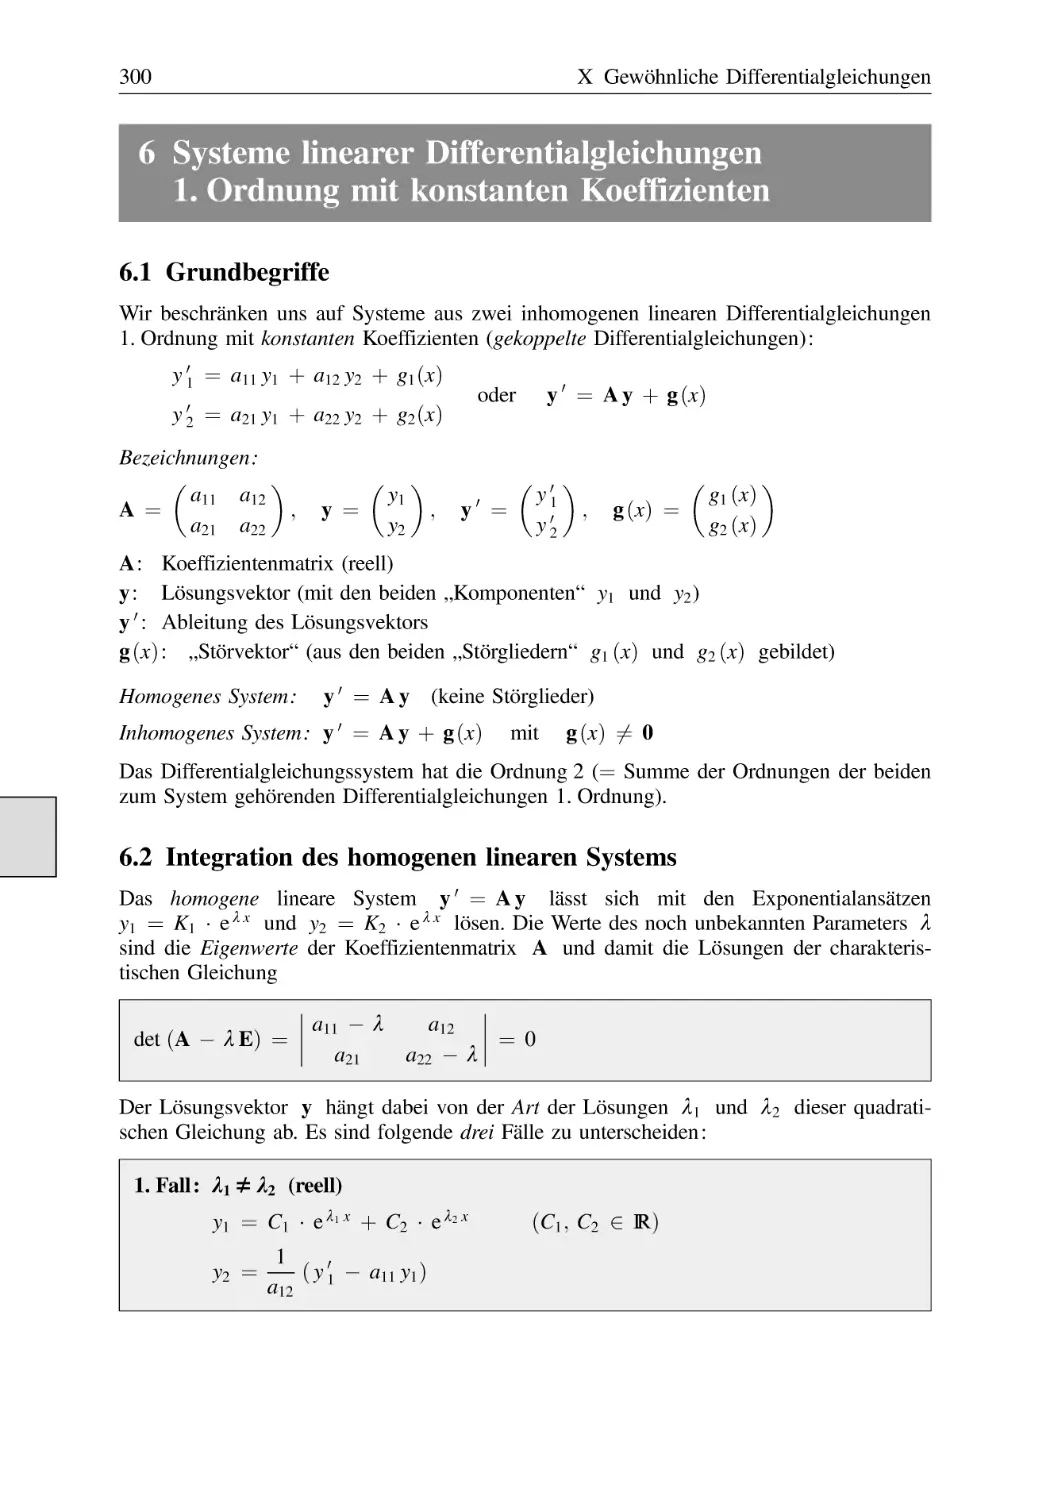 6 Systeme linearer Differentialgleichungen 1. Ordnung mit konstanten Koeffizienten
6.1 Grundbegriffe
6.2 Integration des homogenen linearen Systems